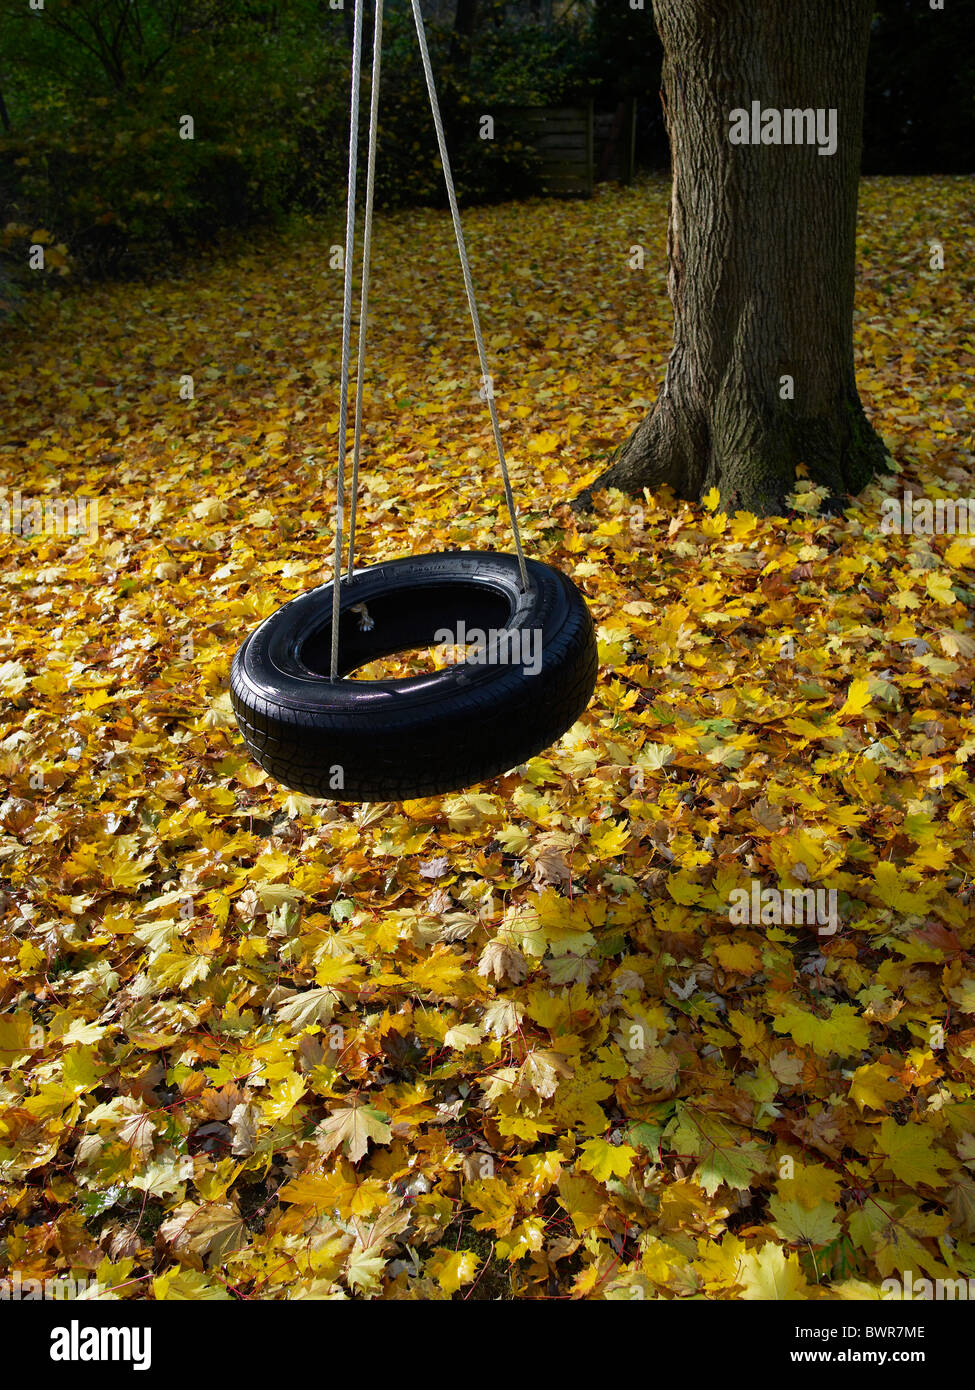 Arbre en rotation des pneus arrière cour au cours de l'automne avec des feuilles jaunes Banque D'Images